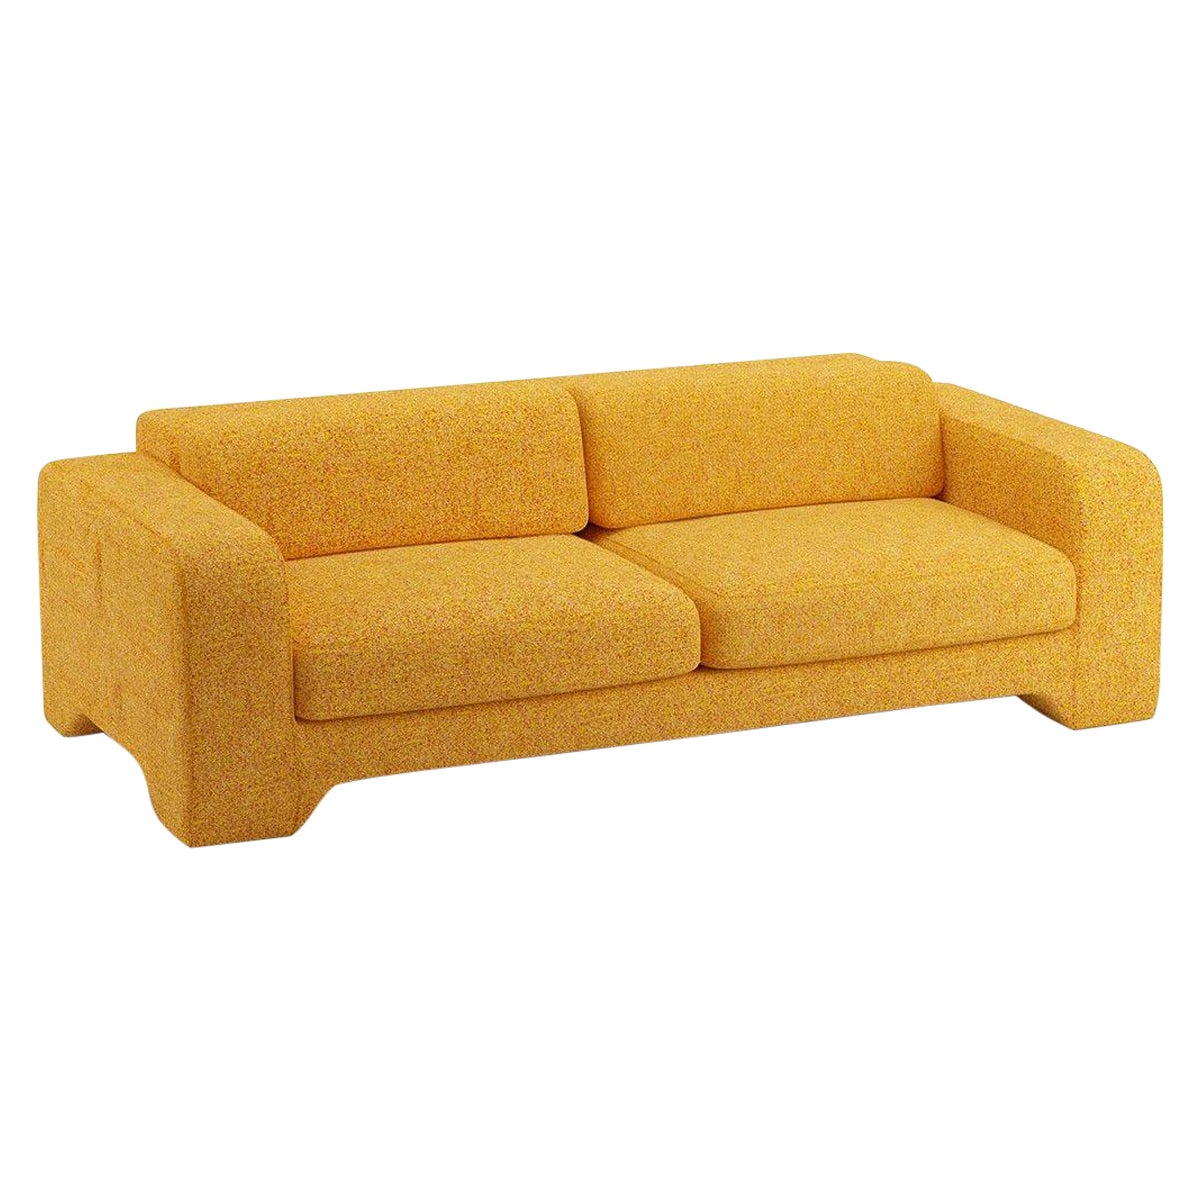 Popus Editions Giovanna 3 Seater Sofa in Saffron Zanzi Linen Fabric For Sale